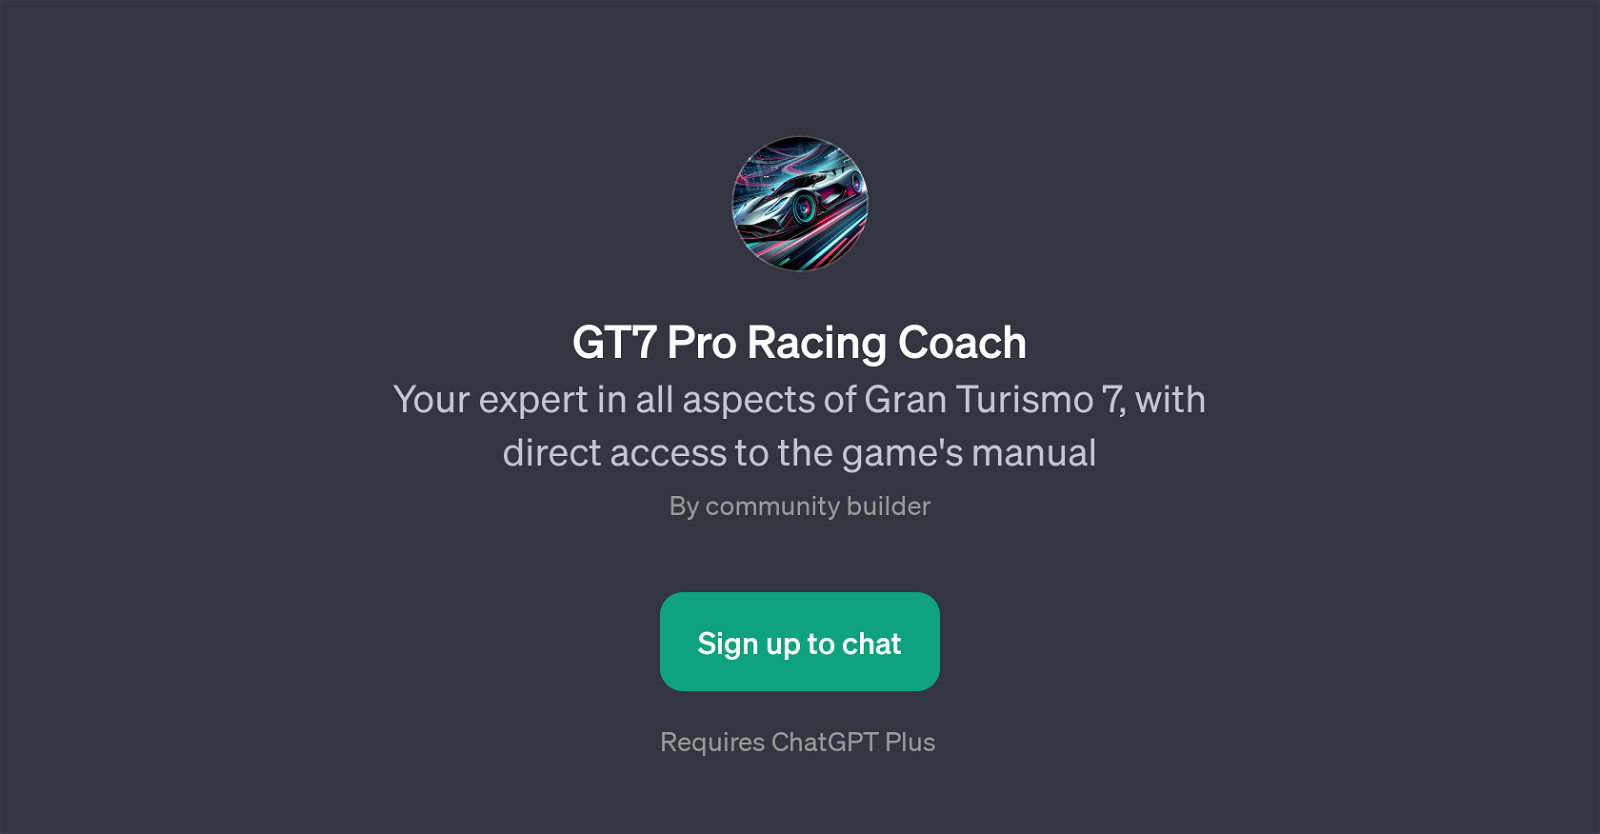 GT7 Pro Racing Coach website